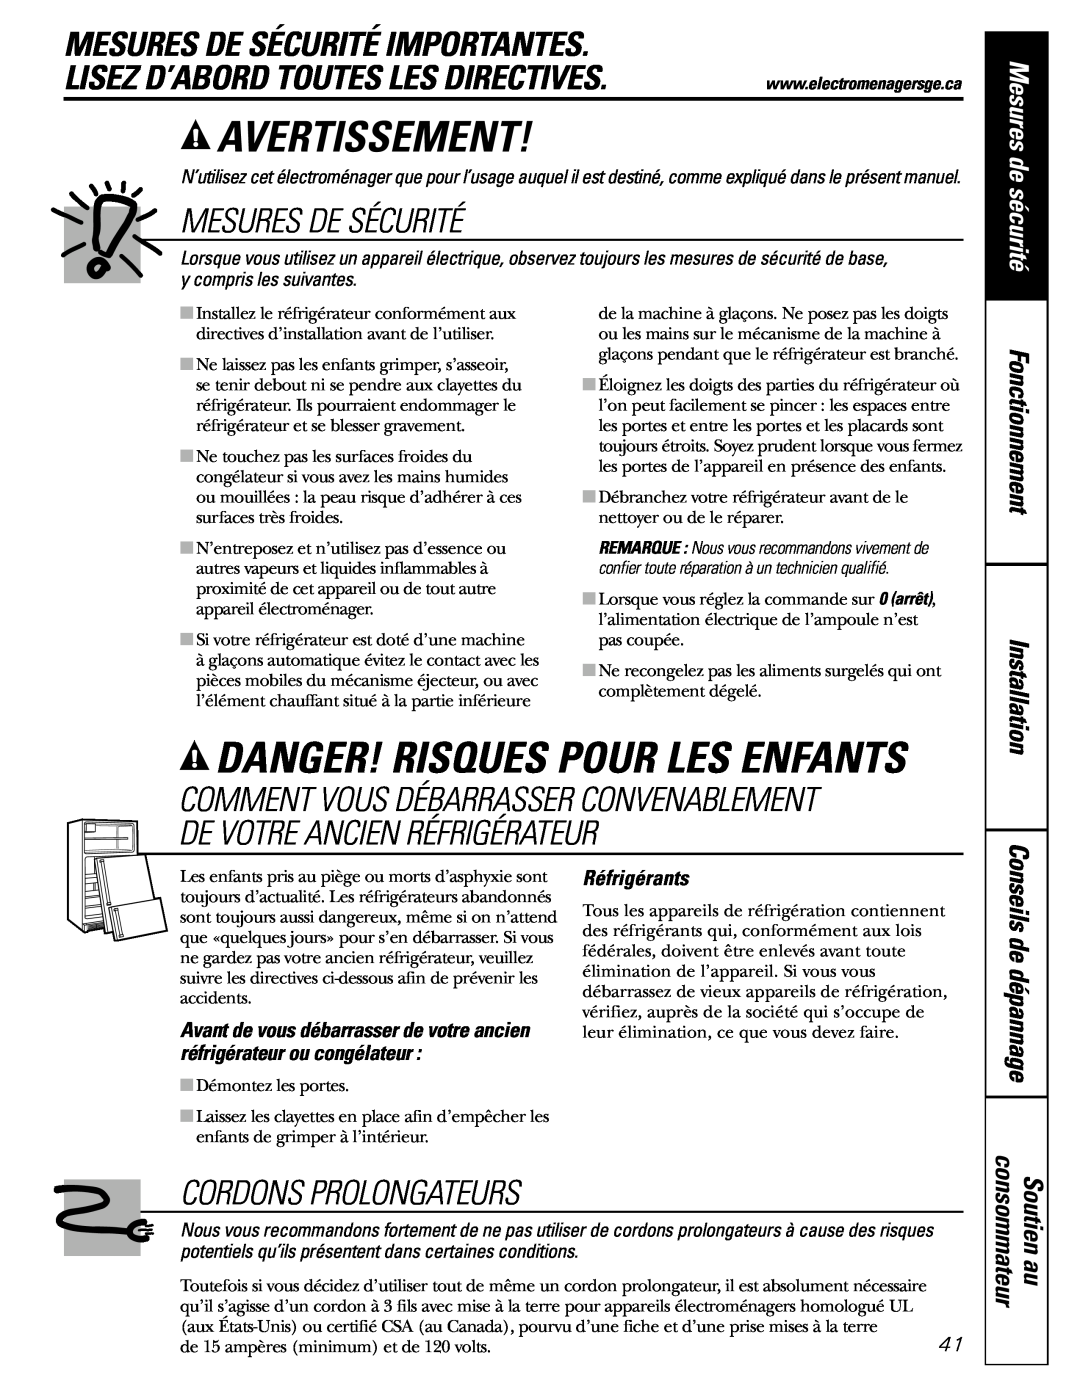 GE Monogram 23 Avertissement, Danger! Risques Pour Les Enfants, Mesures De Sécurité Importantes, Cordons Prolongateurs 